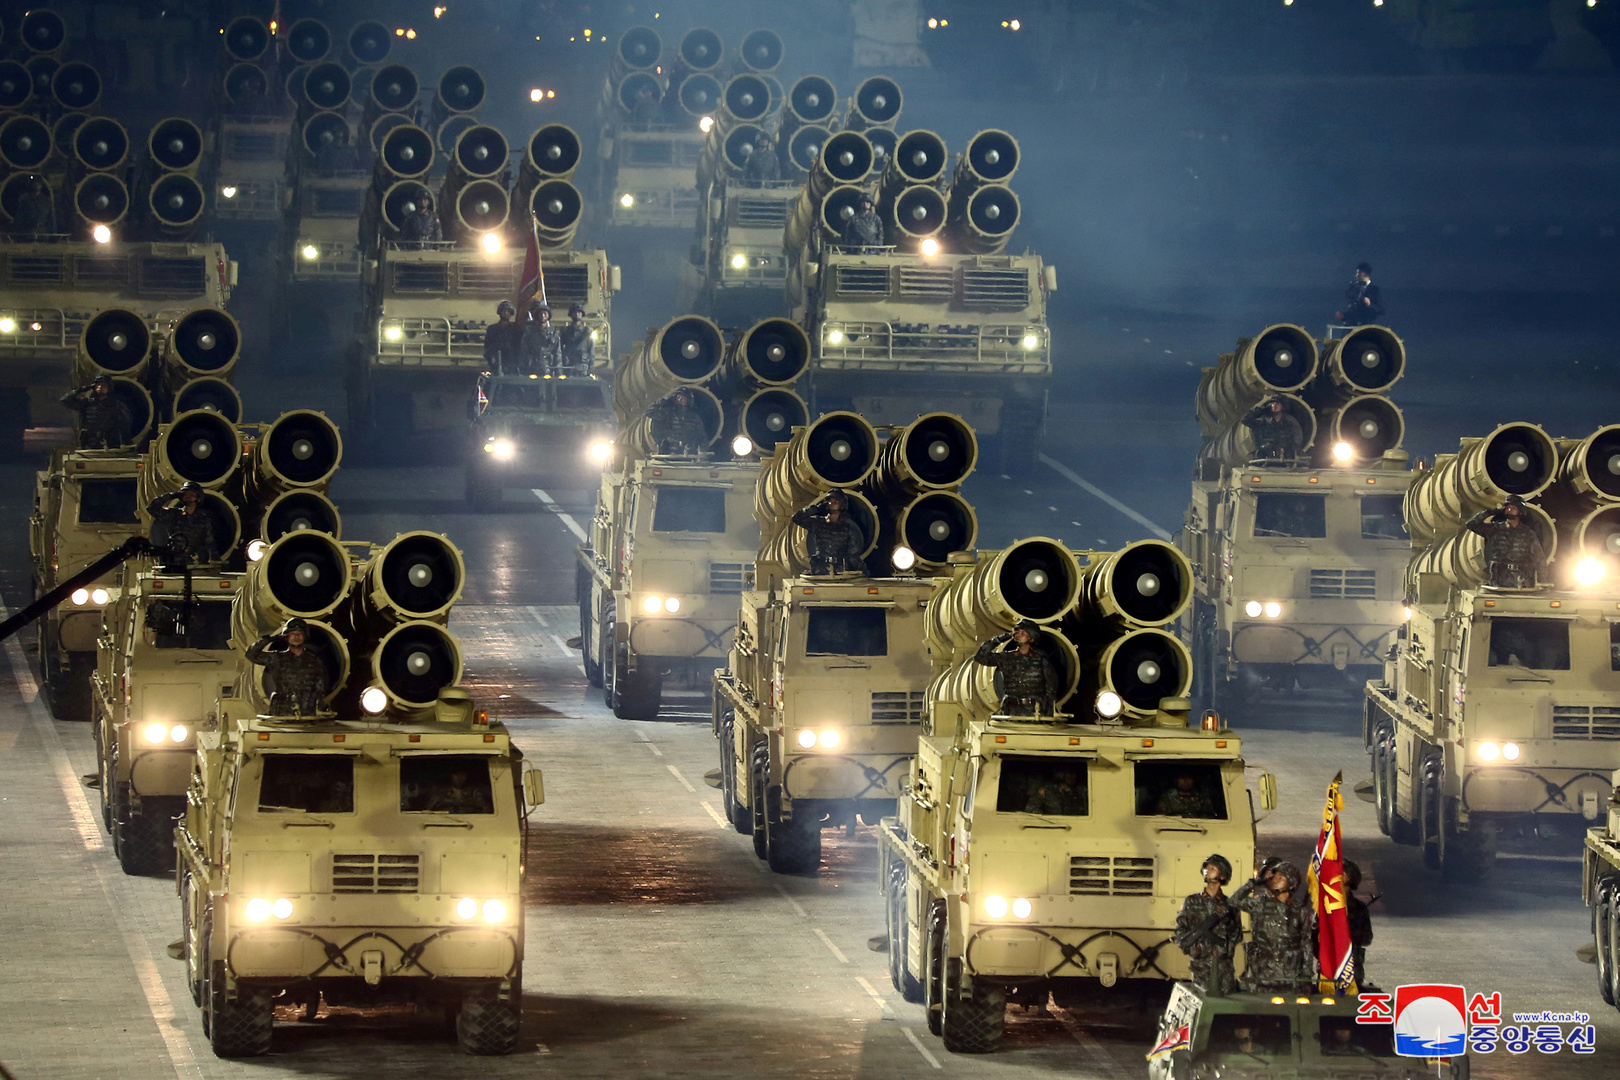 سيئول: جيشنا قادر على اعتراض صواريخ بيونغ يانغ الجديدة